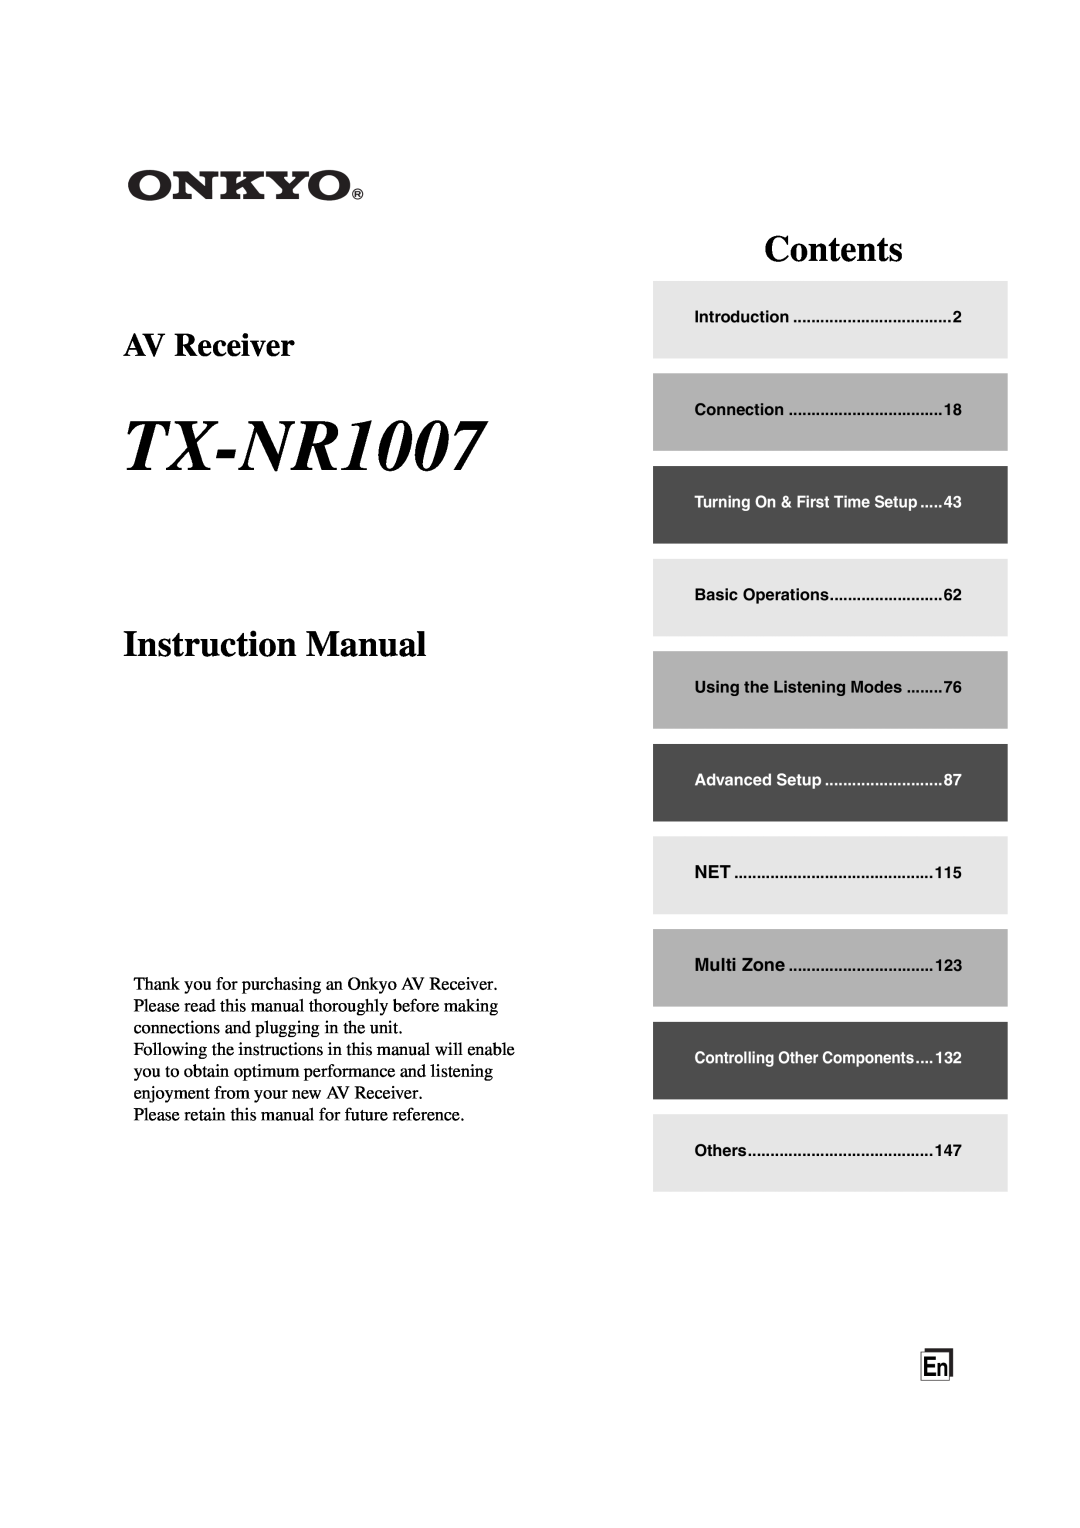 Onkyo TX-NR1007 instruction manual Instruction Manual, Contents, AV Receiver 